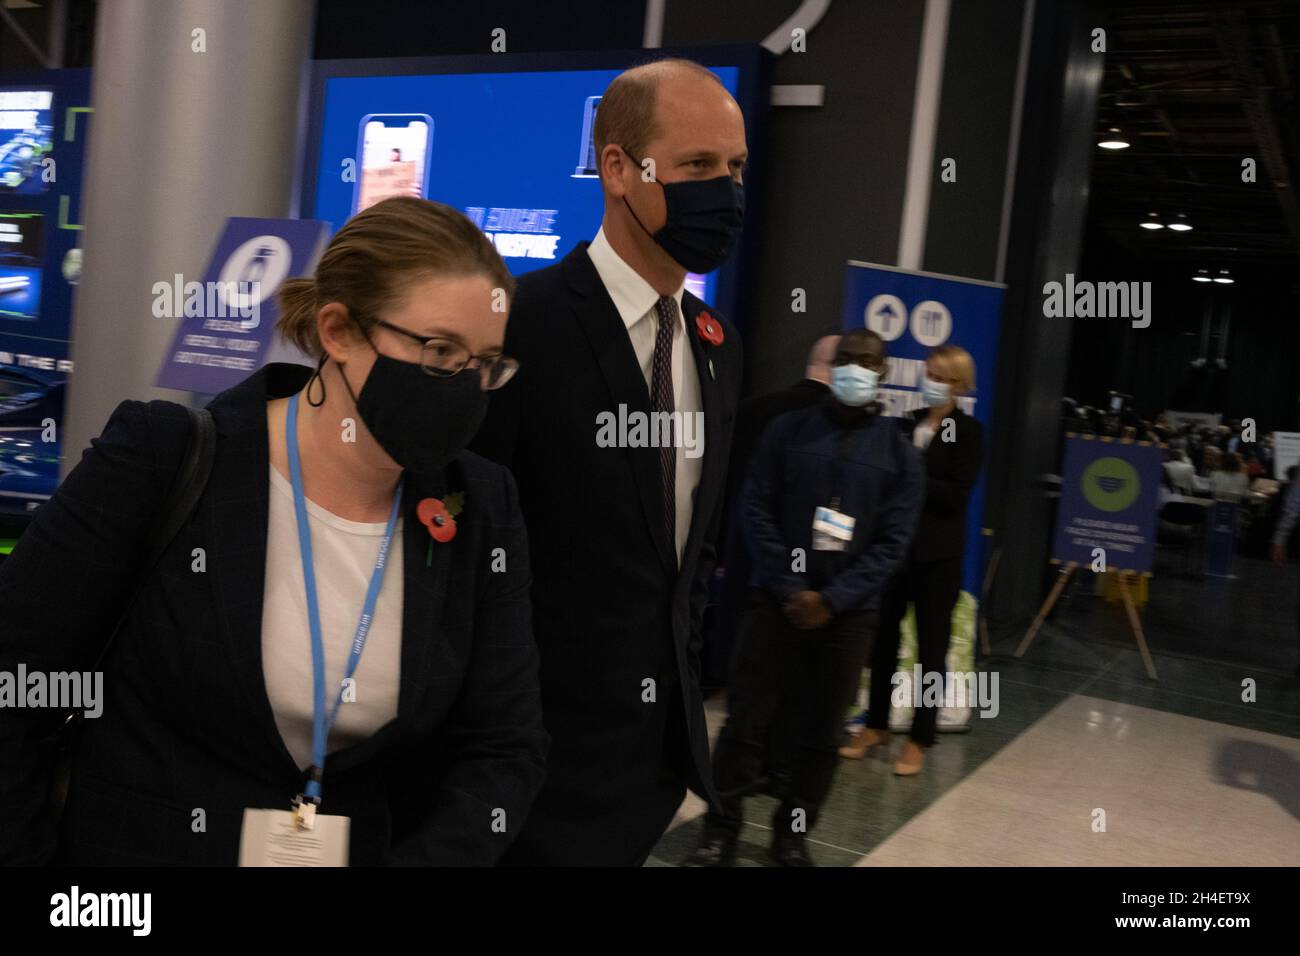 Glasgow, Regno Unito. Il Principe William partecipa alla 26a Conferenza delle Nazioni Unite sui cambiamenti climatici, nota come COP26, a Glasgow, Regno Unito, il 2 novembre 2021. Foto: Jeremy Sutton-Hibbert/Alamy Live News. Foto Stock